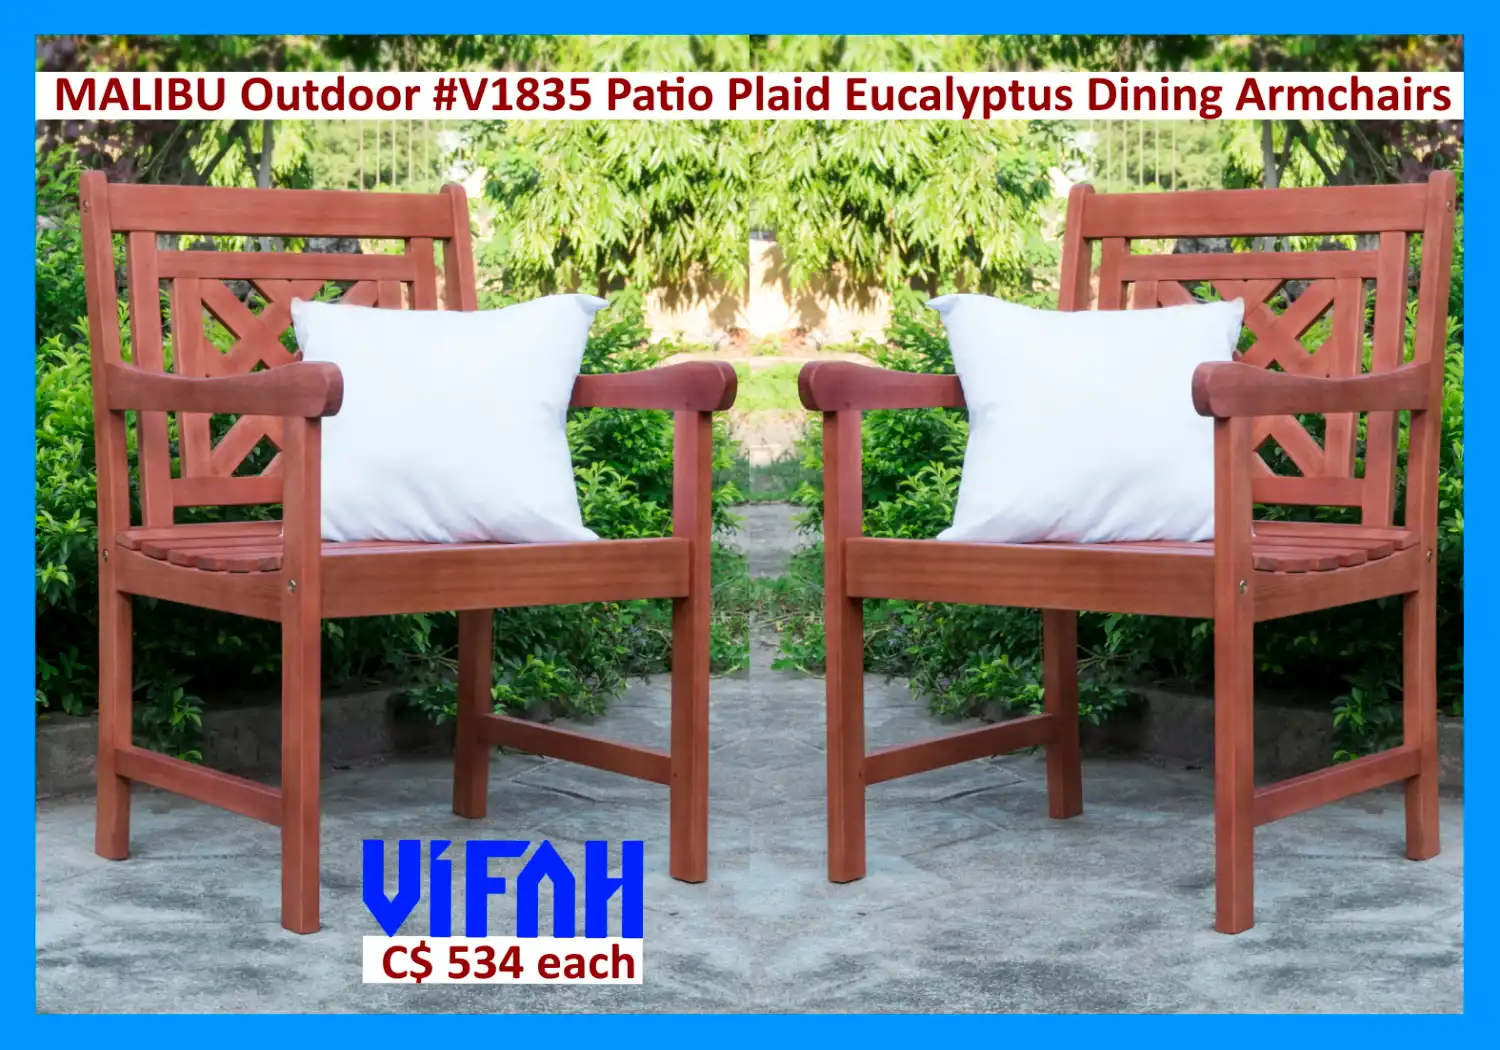 MALIBU Outdoor #V1835 Patio Plaid Eucalyptus Dining Armchairs